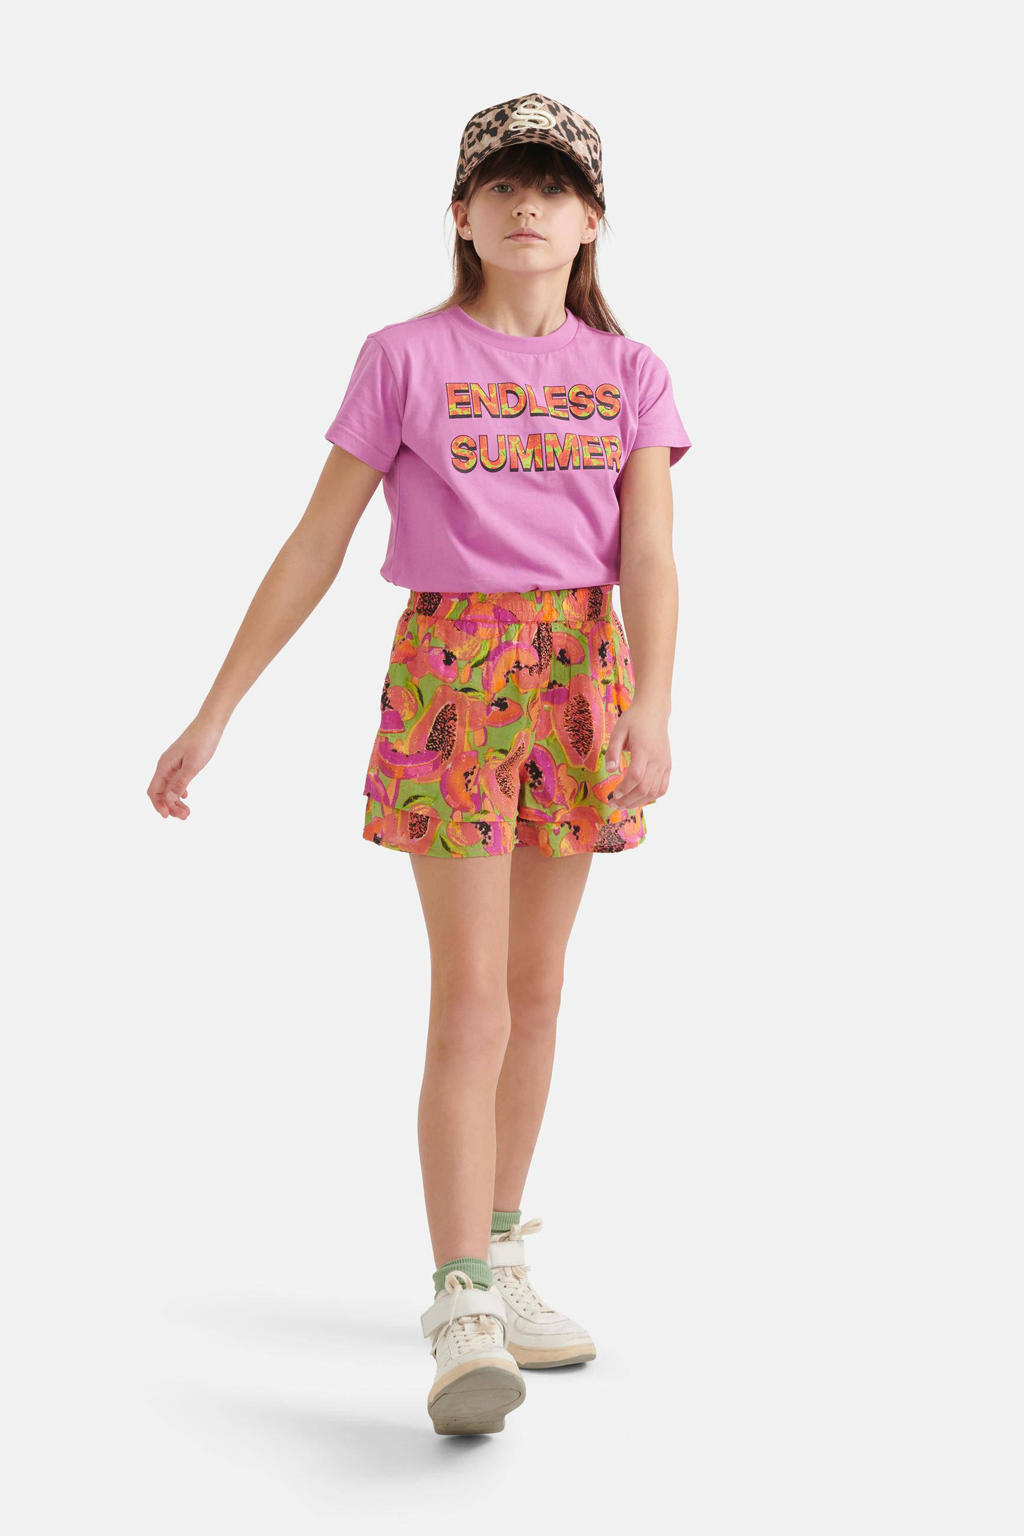 Paarse meisjes Shoeby Jill & Mitch T-shirt van katoen met tekst print, korte mouwen en ronde hals